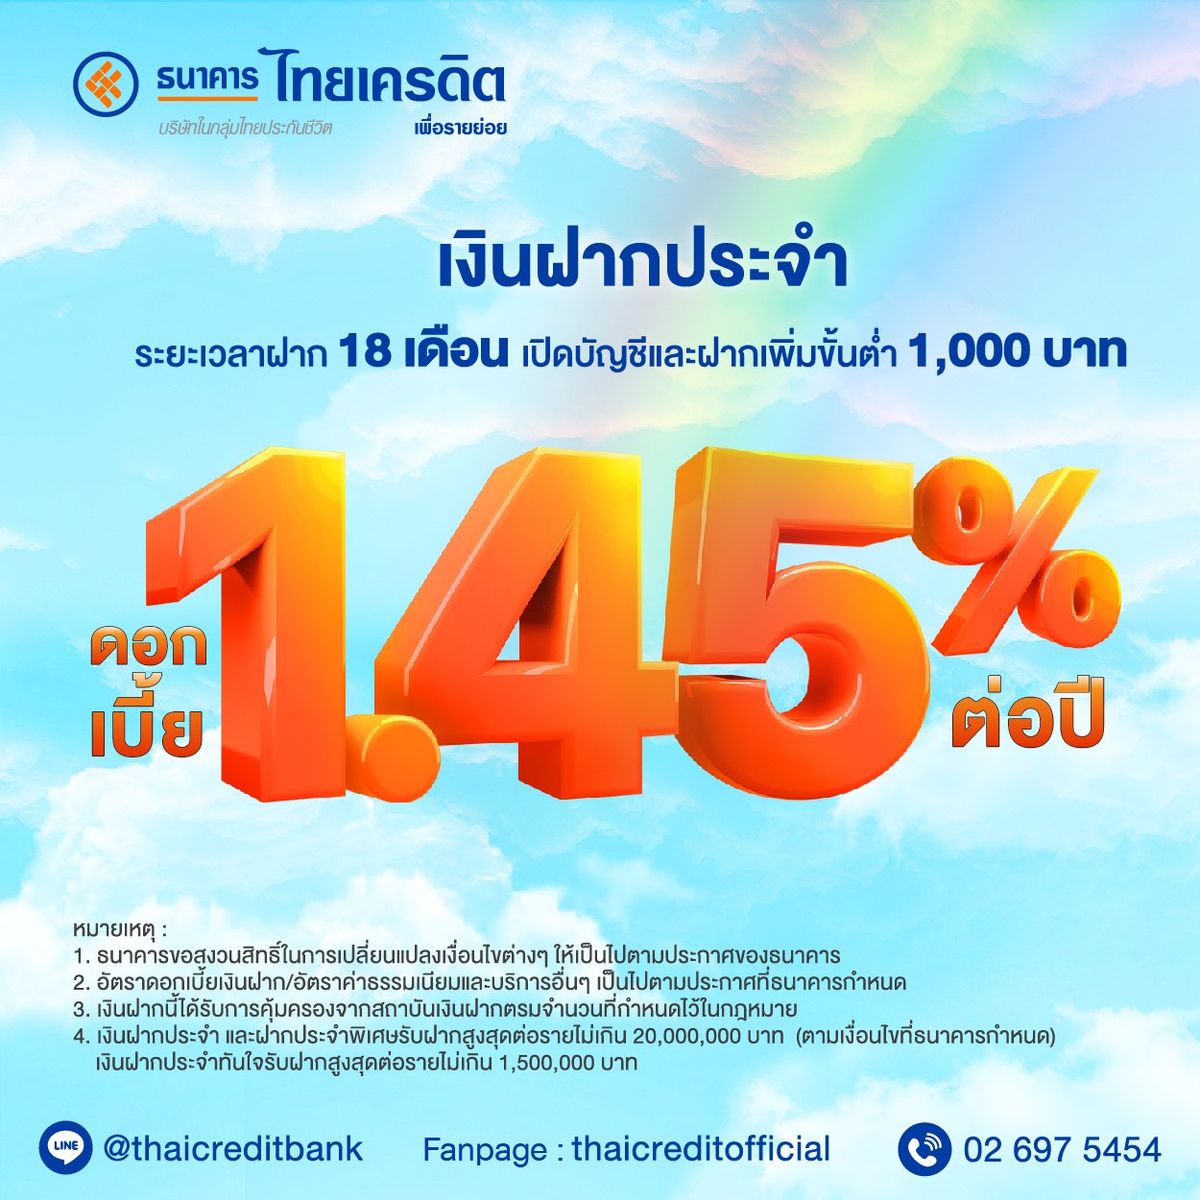 ฝากประจำ กับ ธนาคารไทยเครดิต รับดอกเบี้ยสูงถึง 1.5% ต่อปี มิถุนายน 2023 -  Sale Here